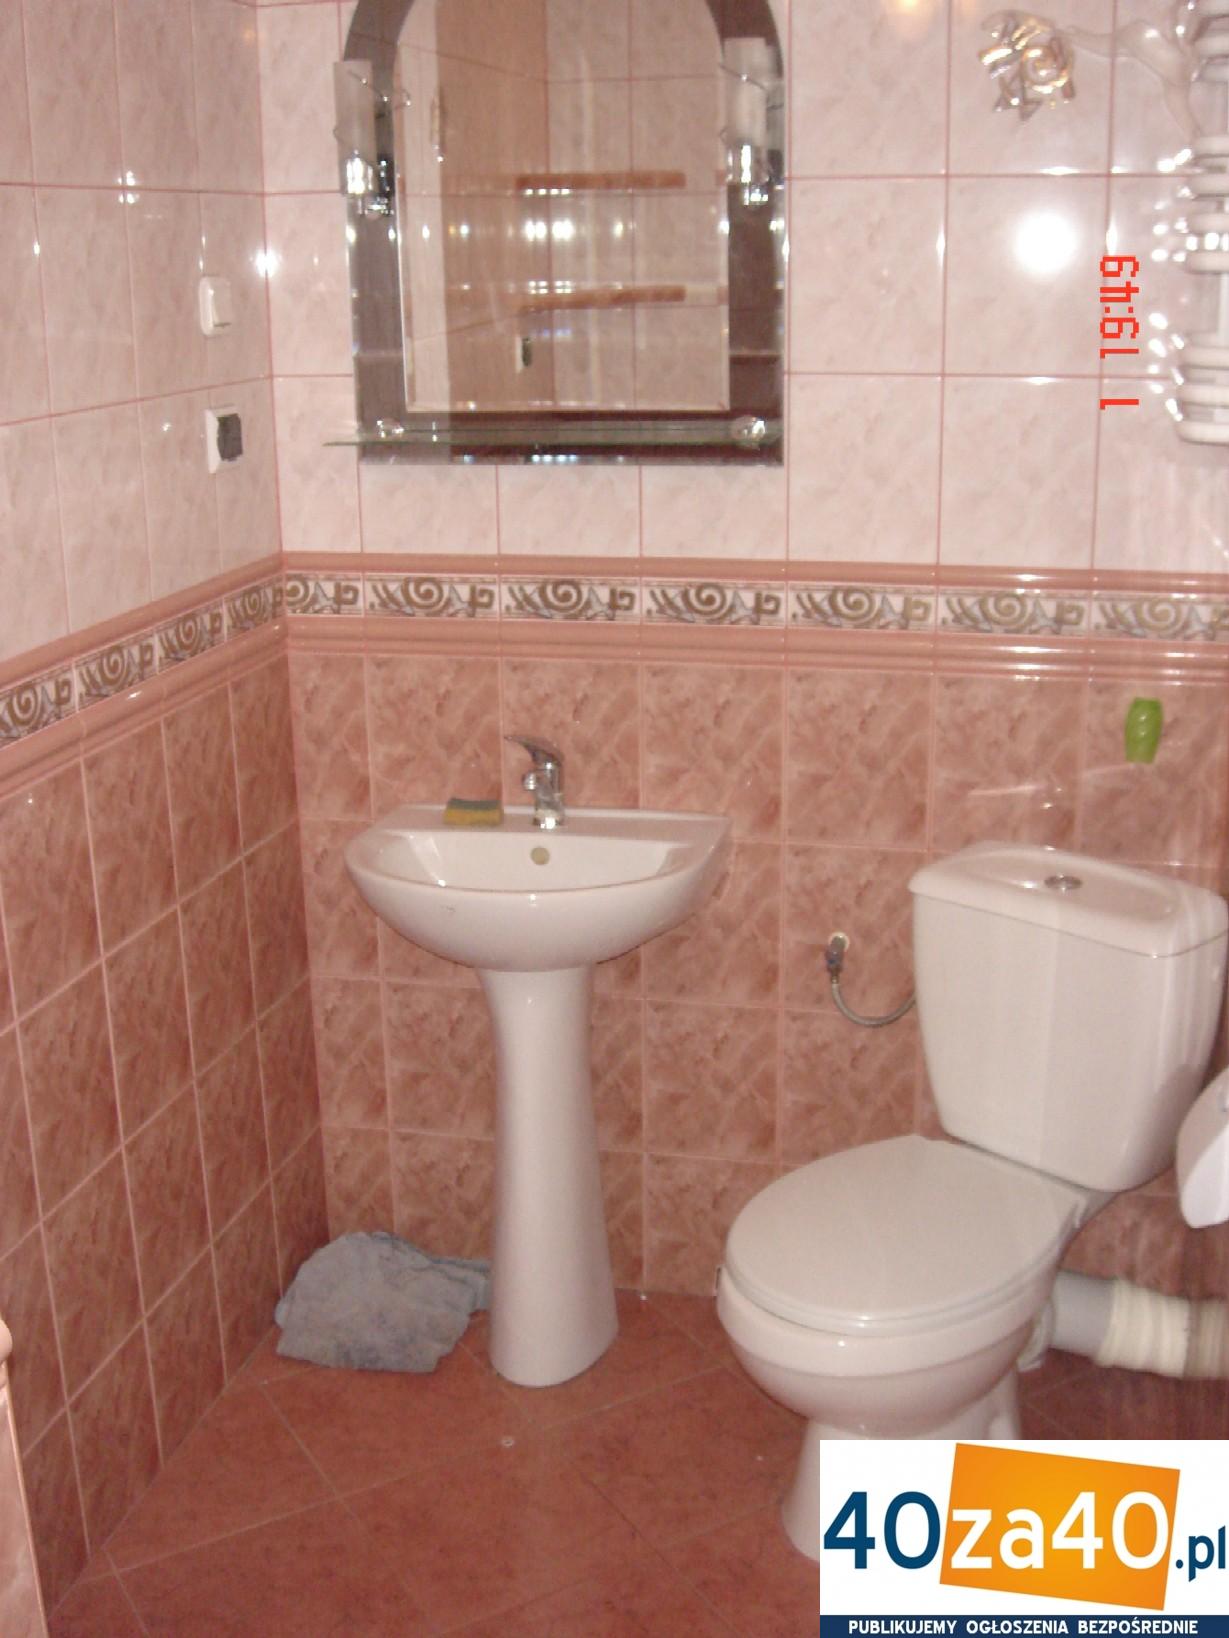 Mieszkanie do wynajęcia, pokoje: 1, cena: 790,00 PLN, Sosnowiec, kontakt: +48 501535778